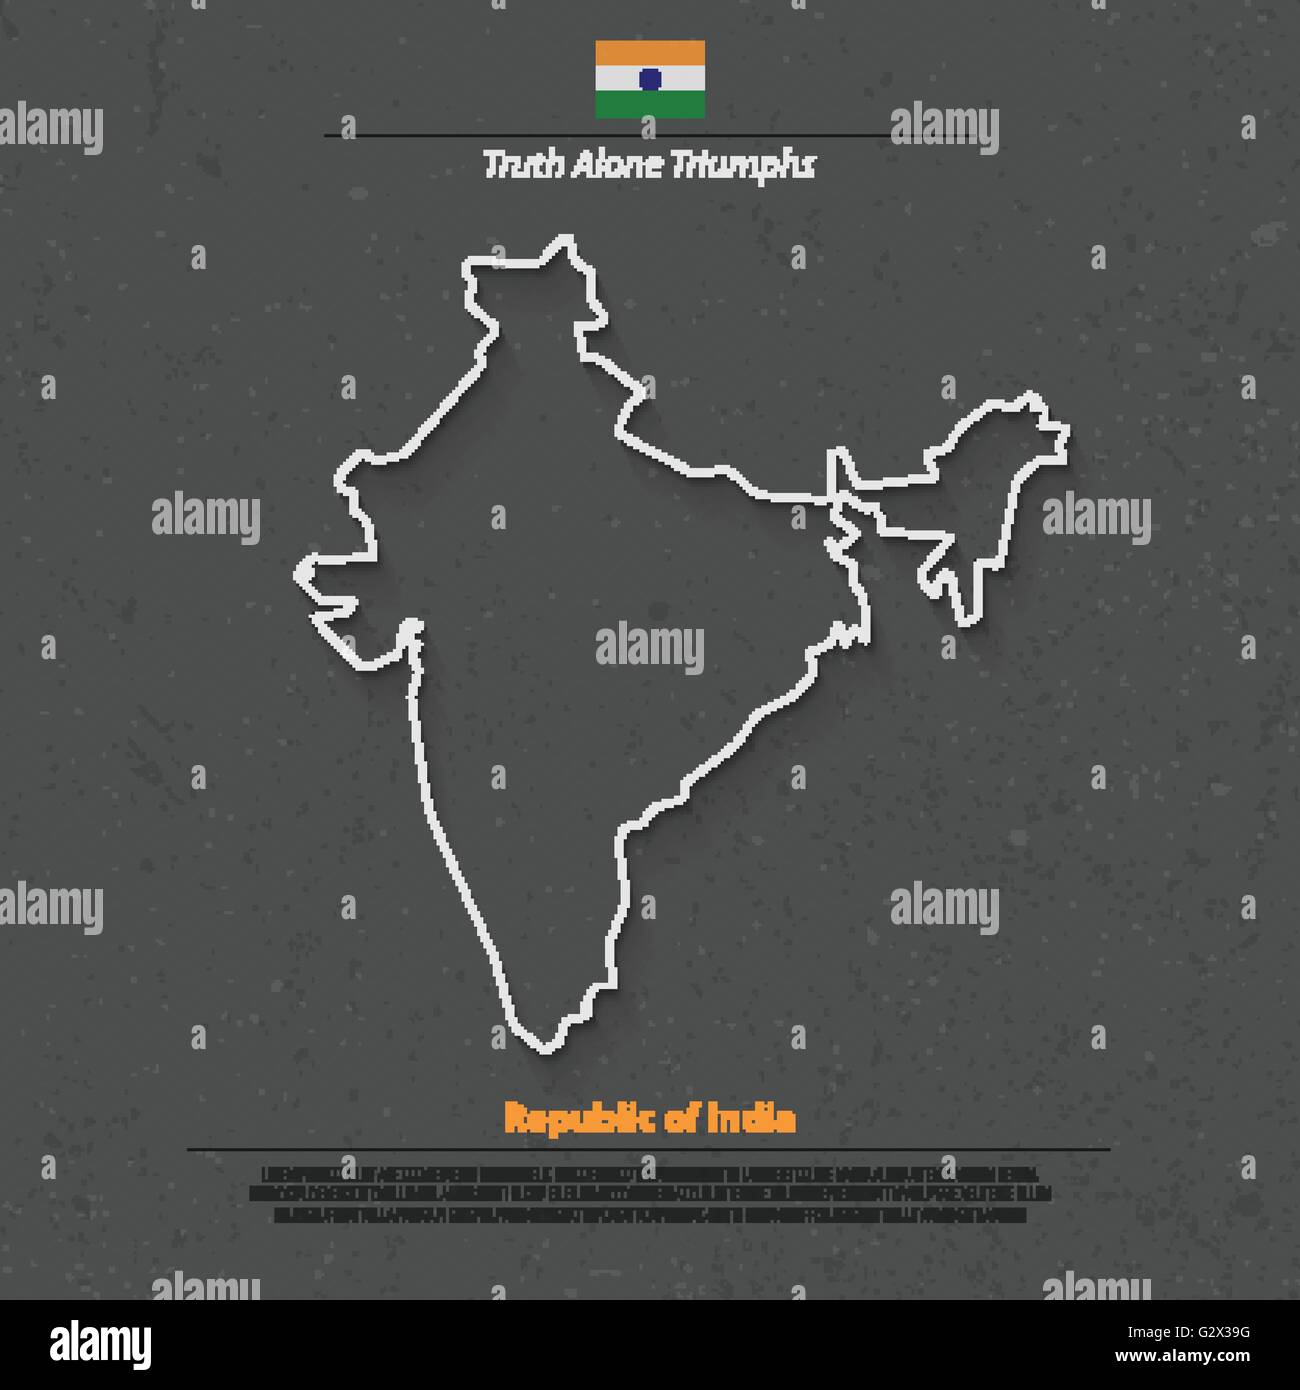 Republik Indien isoliert Karte und offizielle Flaggen-Icons. Vektor-indische politische Karte dünne Linie Stil Illustration. Südasien-cou Stock Vektor